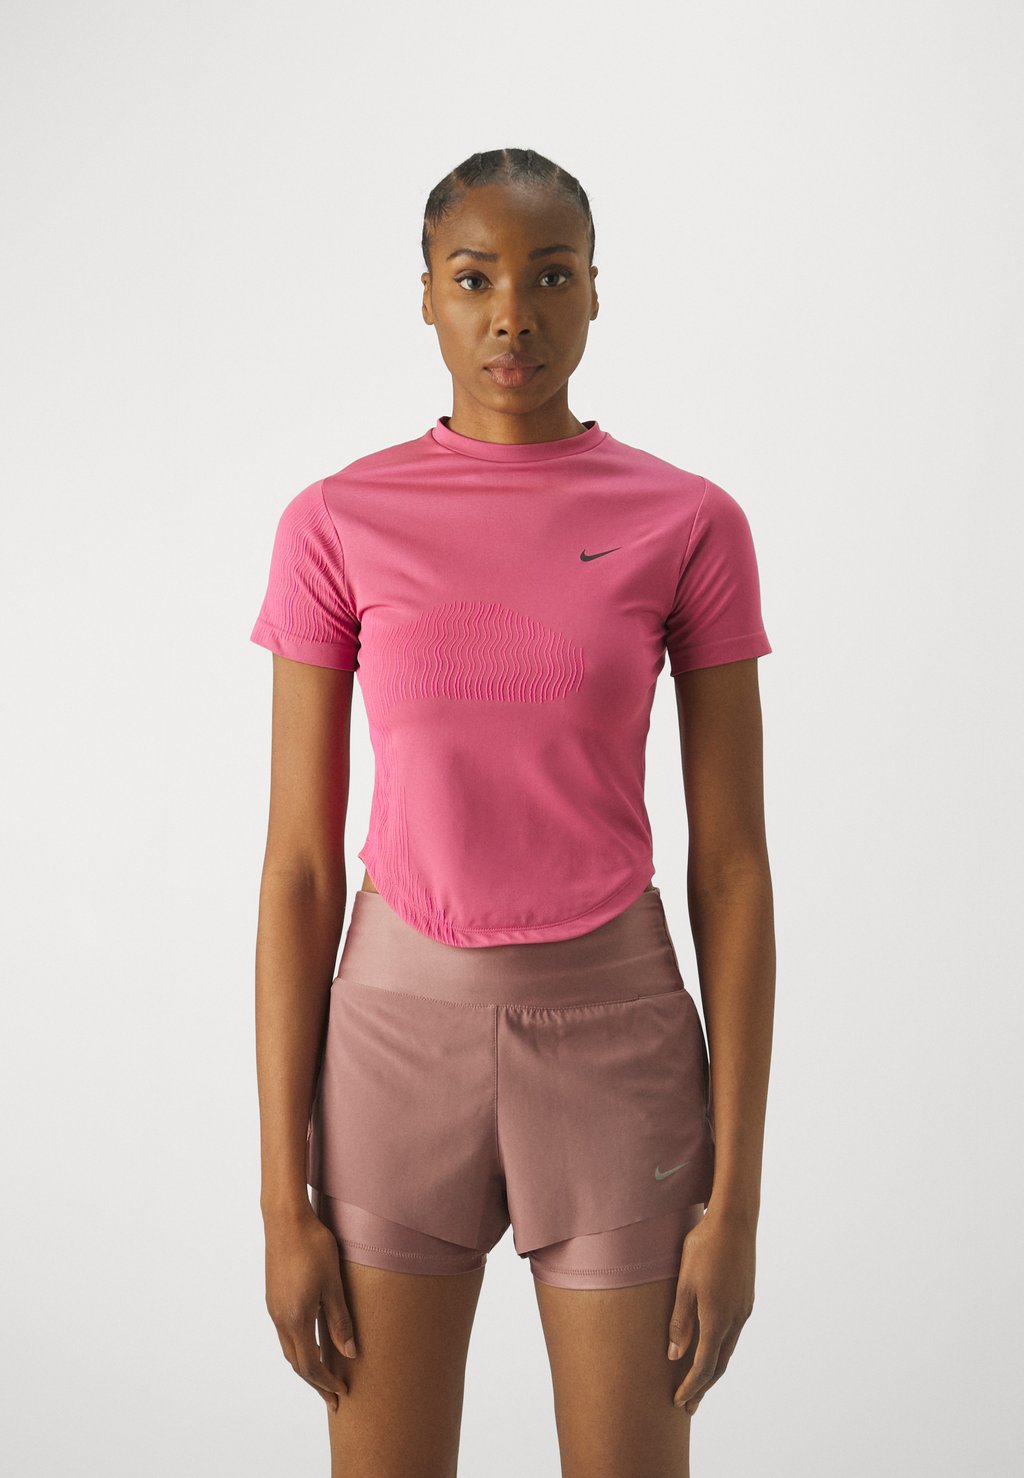 Спортивная футболка Nike, алхимический розовый/дымчато-лиловый